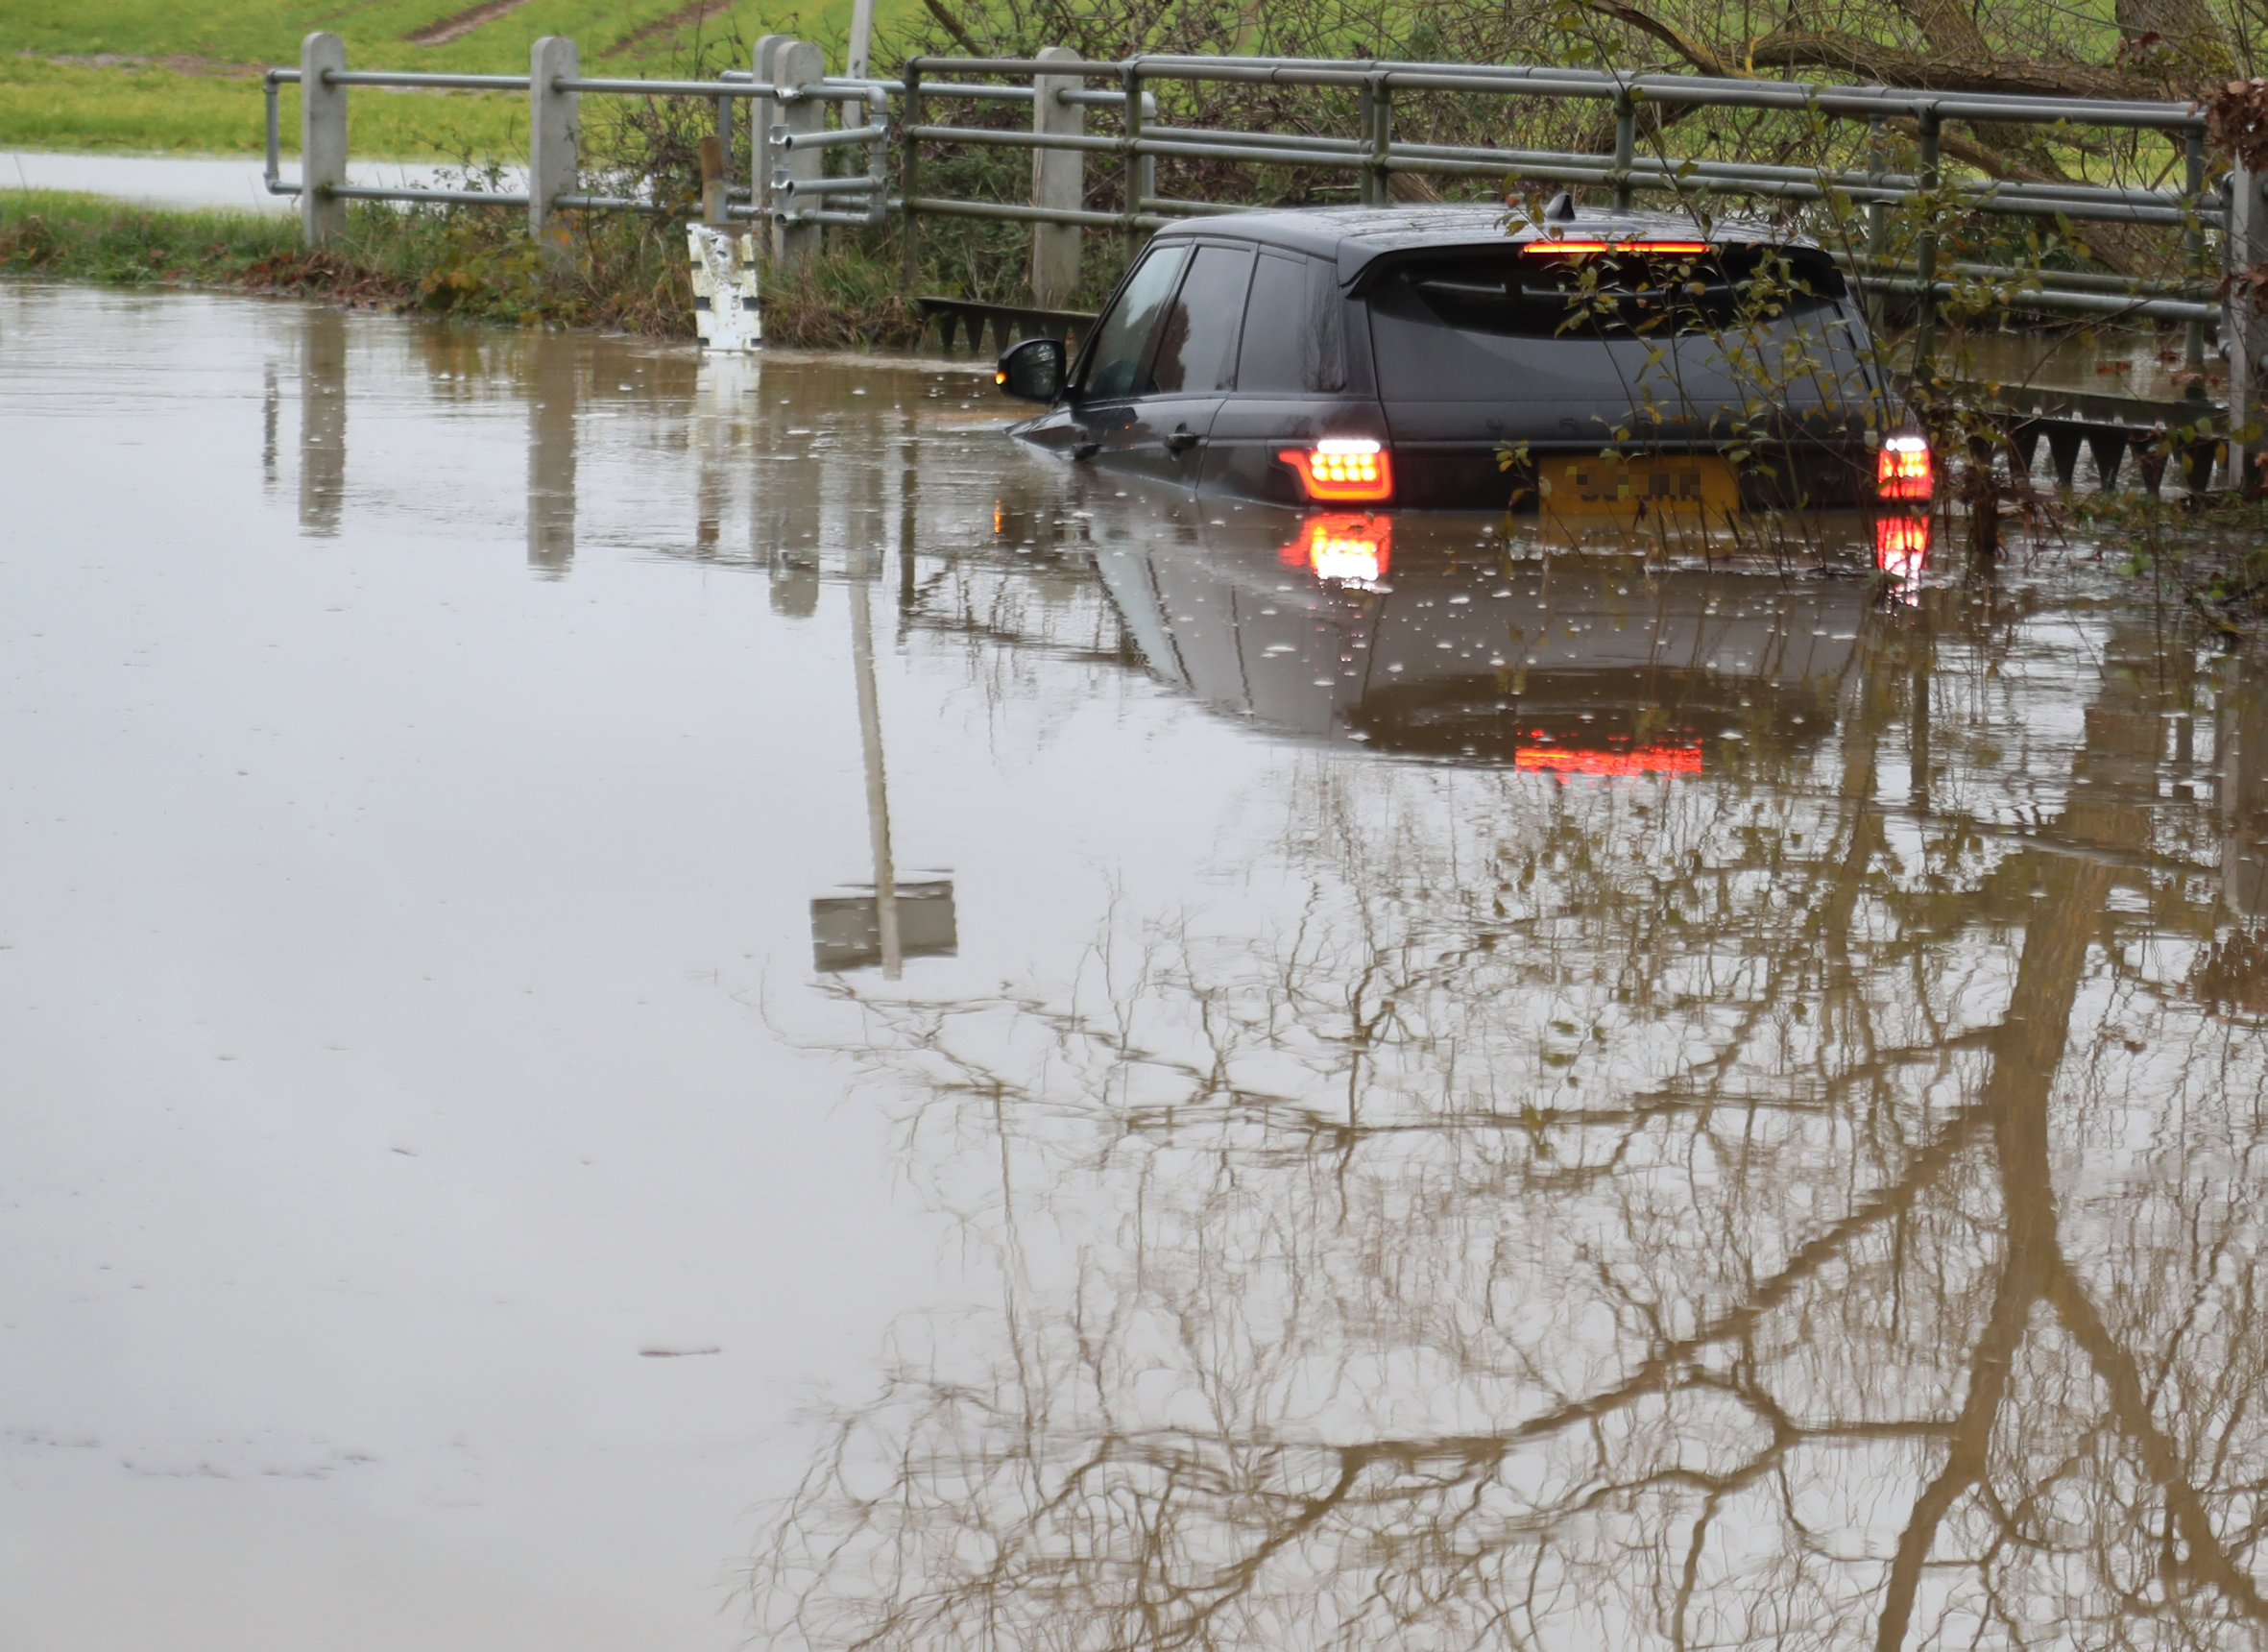 Es wurde angenommen, dass ein Range Rover am Sonntag nach heftigen Regenfällen in Essex von einer 1,20 Meter hohen Überschwemmung erfasst wurde